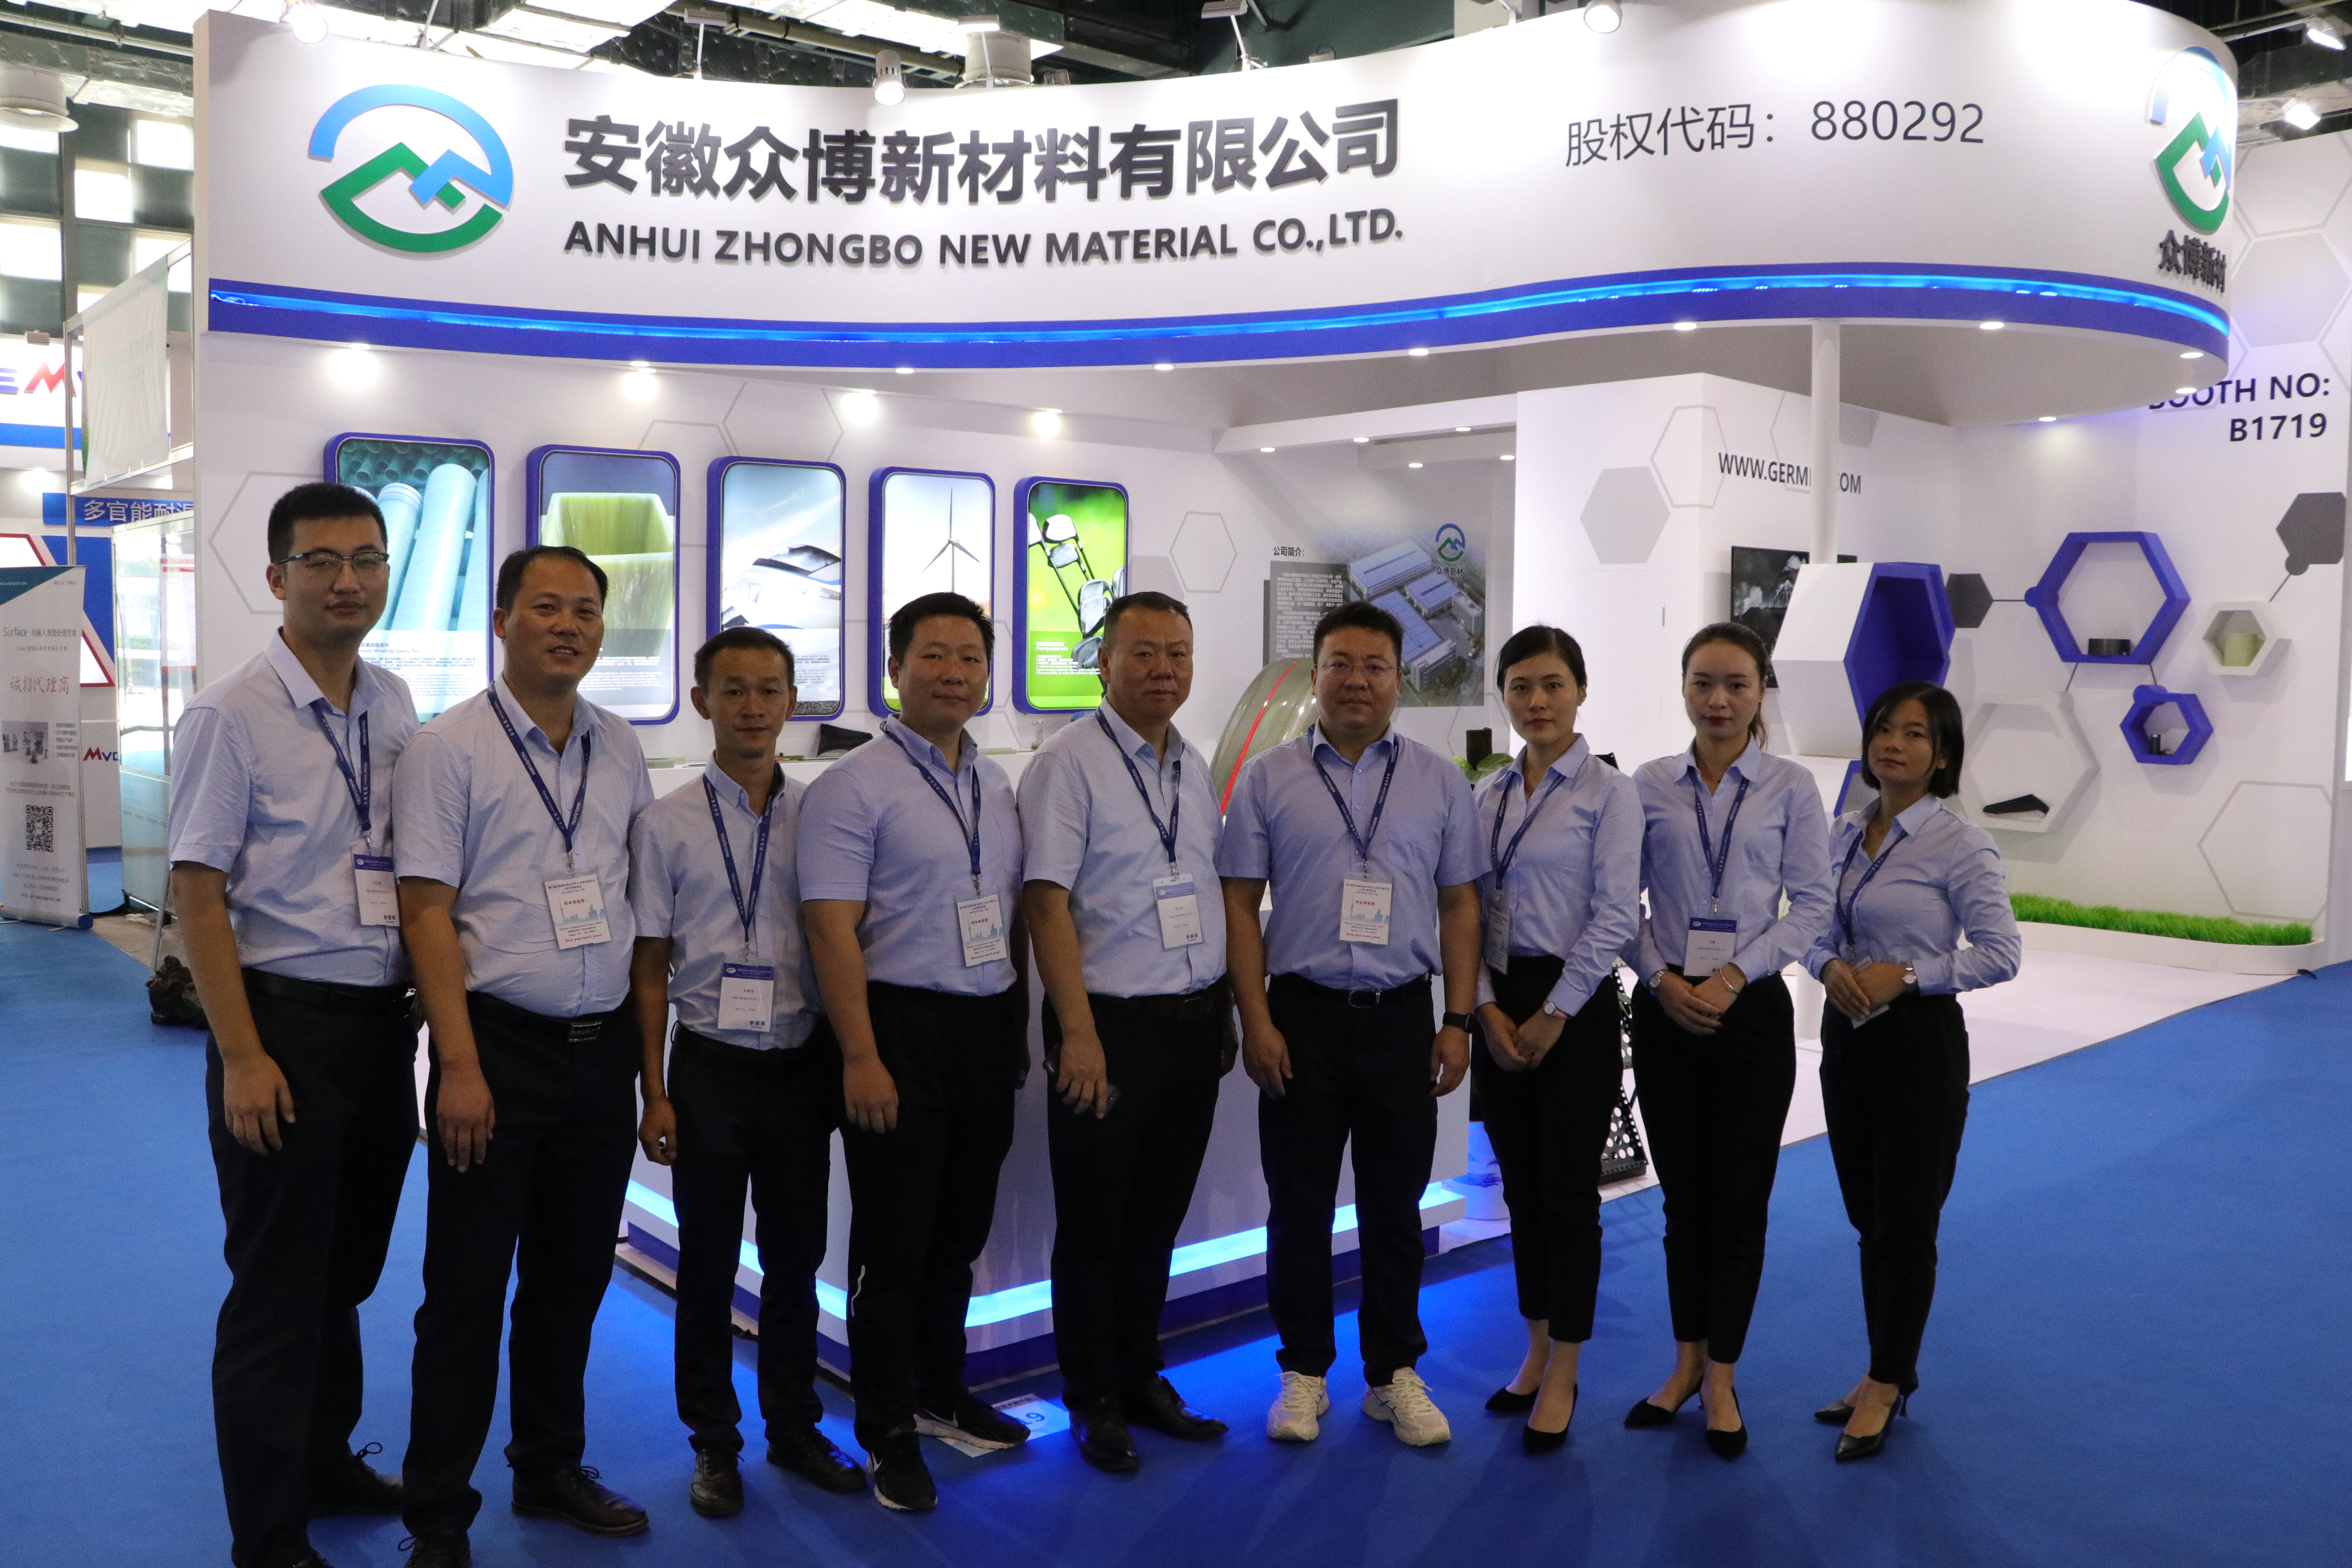 安徽众博新材料有限公司第26届国际中国国际复合材料工业技术展览会参展圆满结束